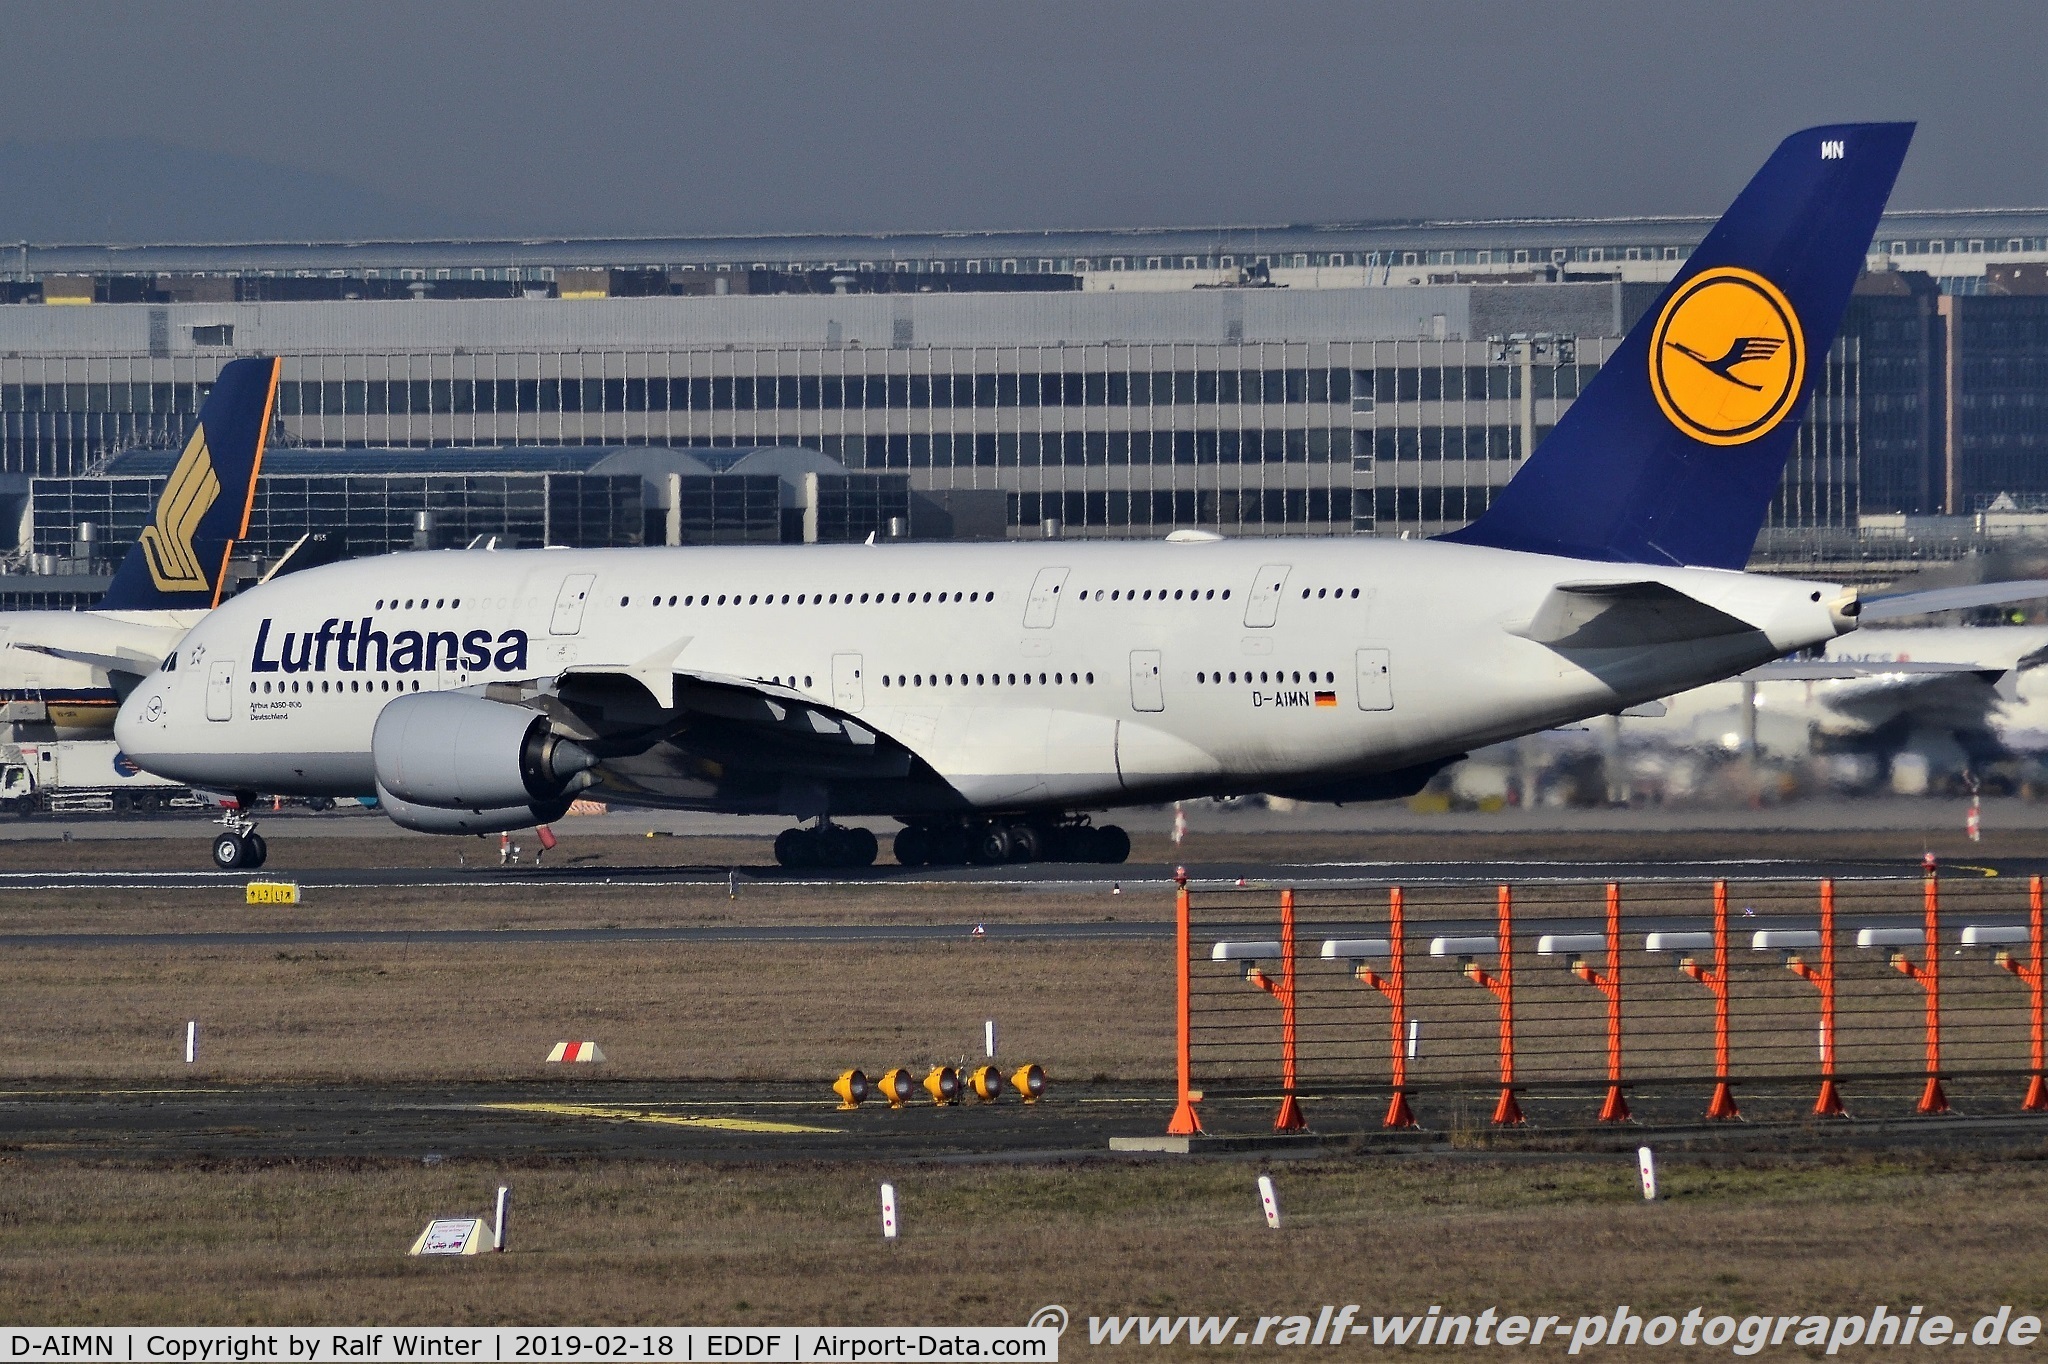 D-AIMN, 2014 Airbus A380-841 C/N 177, Airbus A380-841 - LH DLH Lufthansa 'San Francisco' - 177 - D-AIMN - 18.02.2019 - FRA